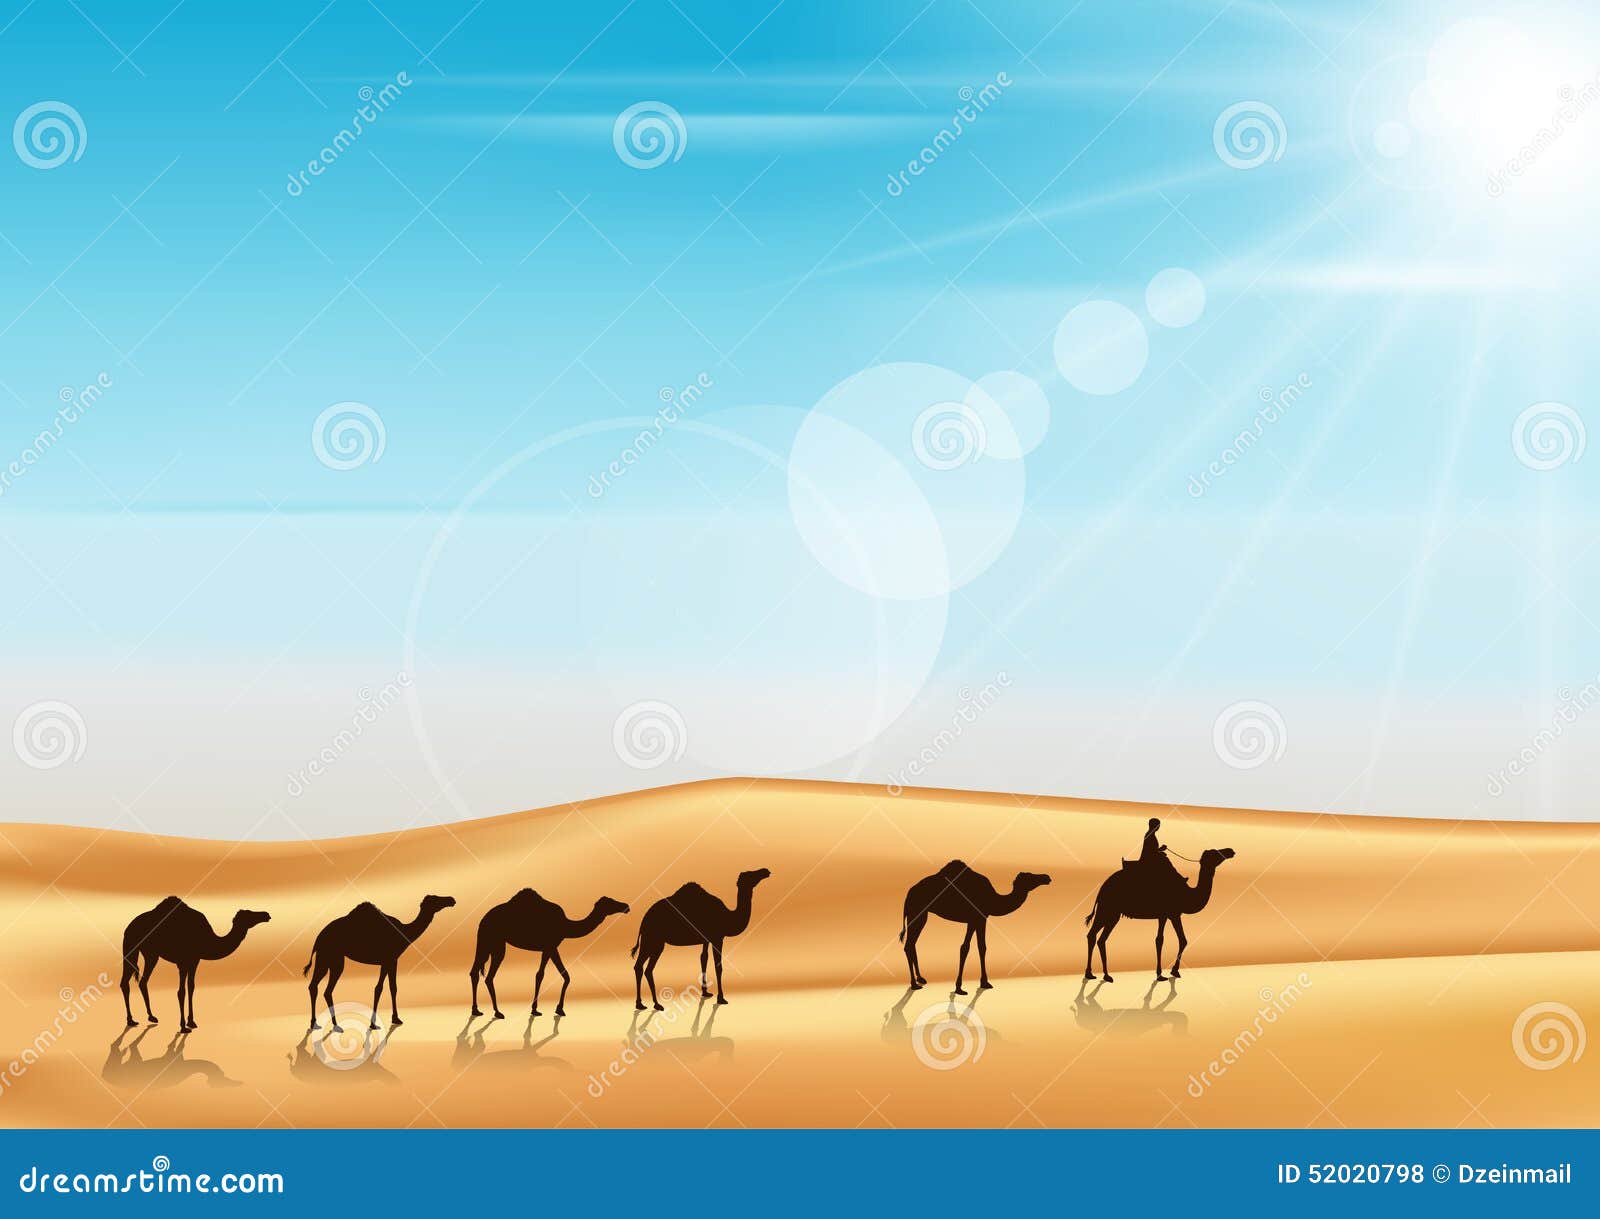 Караван верблюдов в пустыне вектор панорама